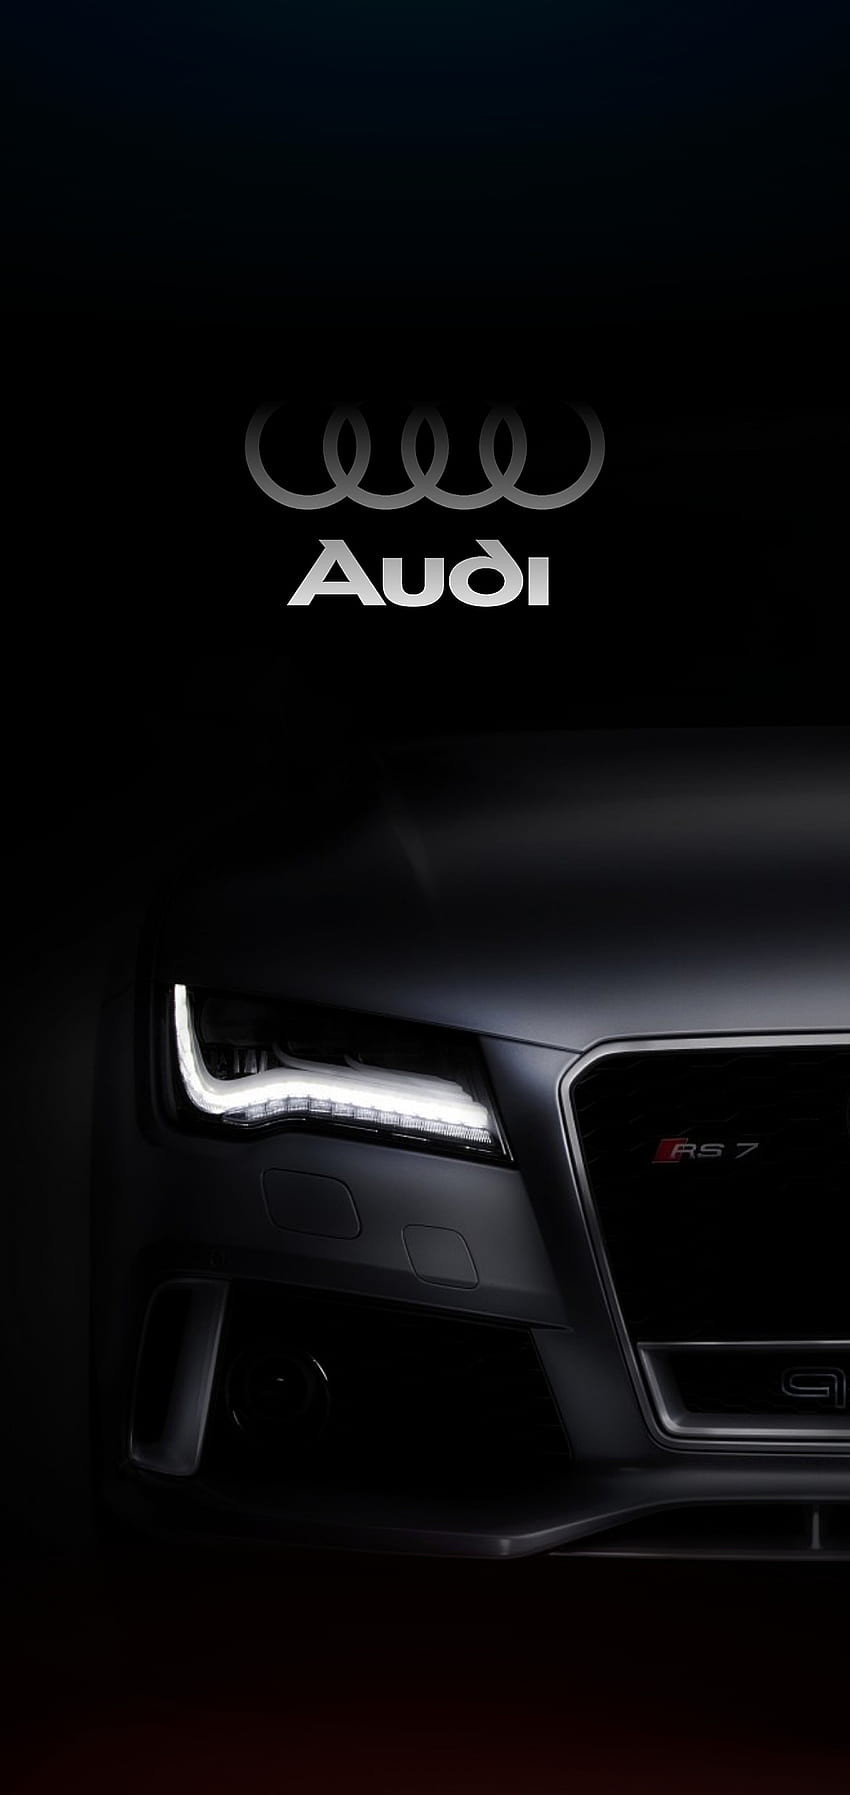 Audi, mobil, samsung, android, desain, iphone wallpaper ponsel HD